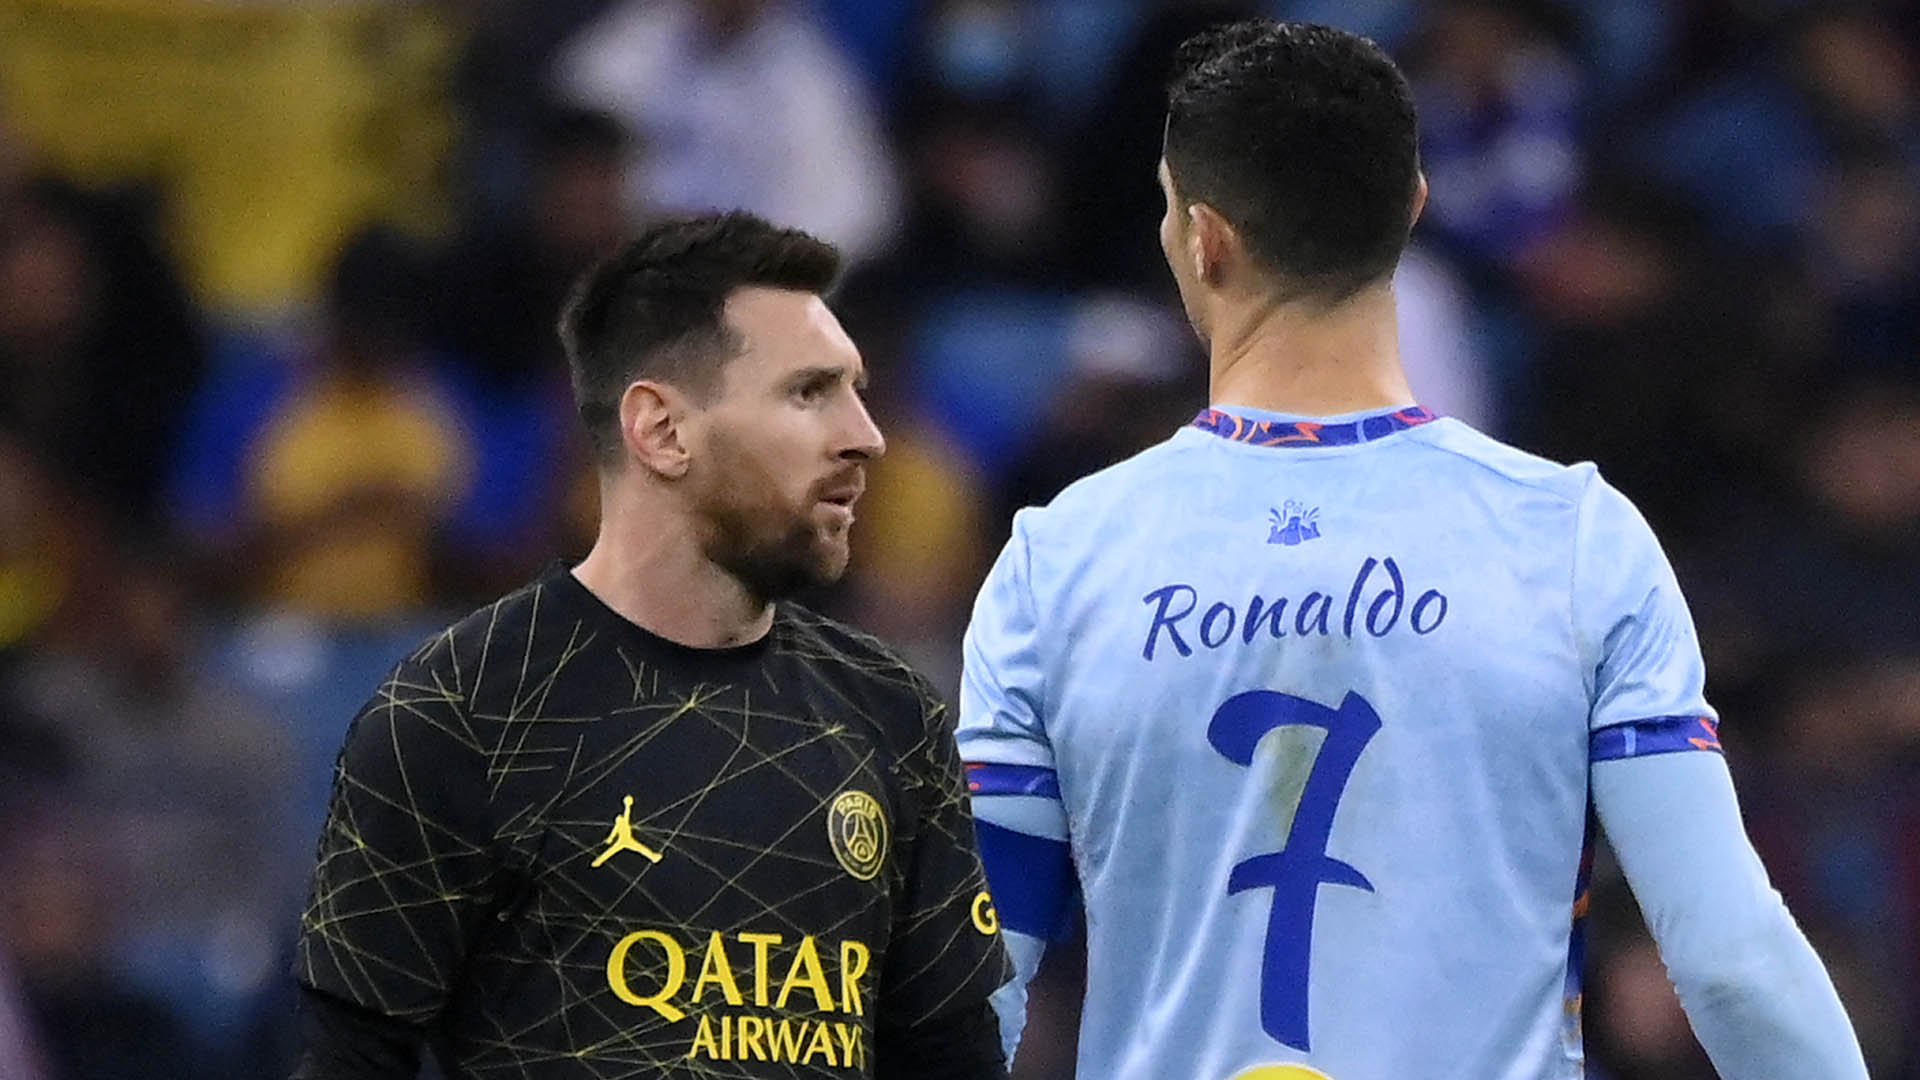 ¿Messi y Cristiano en la misma Liga? Desde Arabia Saudí advierten deseo de juntarlos